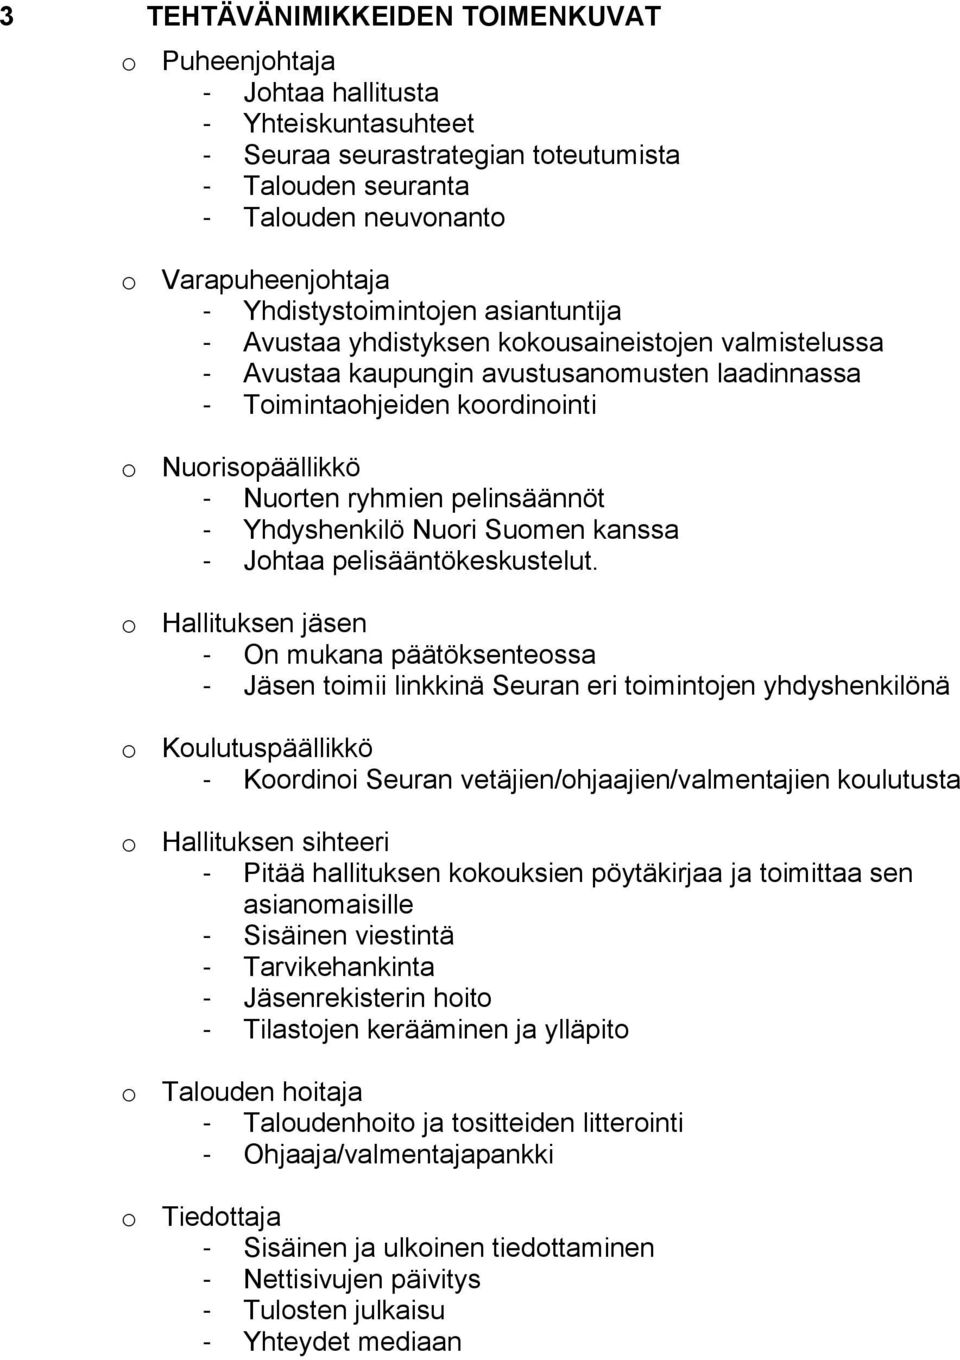 ryhmien pelinsäännöt - Yhdyshenkilö Nuori Suomen kanssa - Johtaa pelisääntökeskustelut.